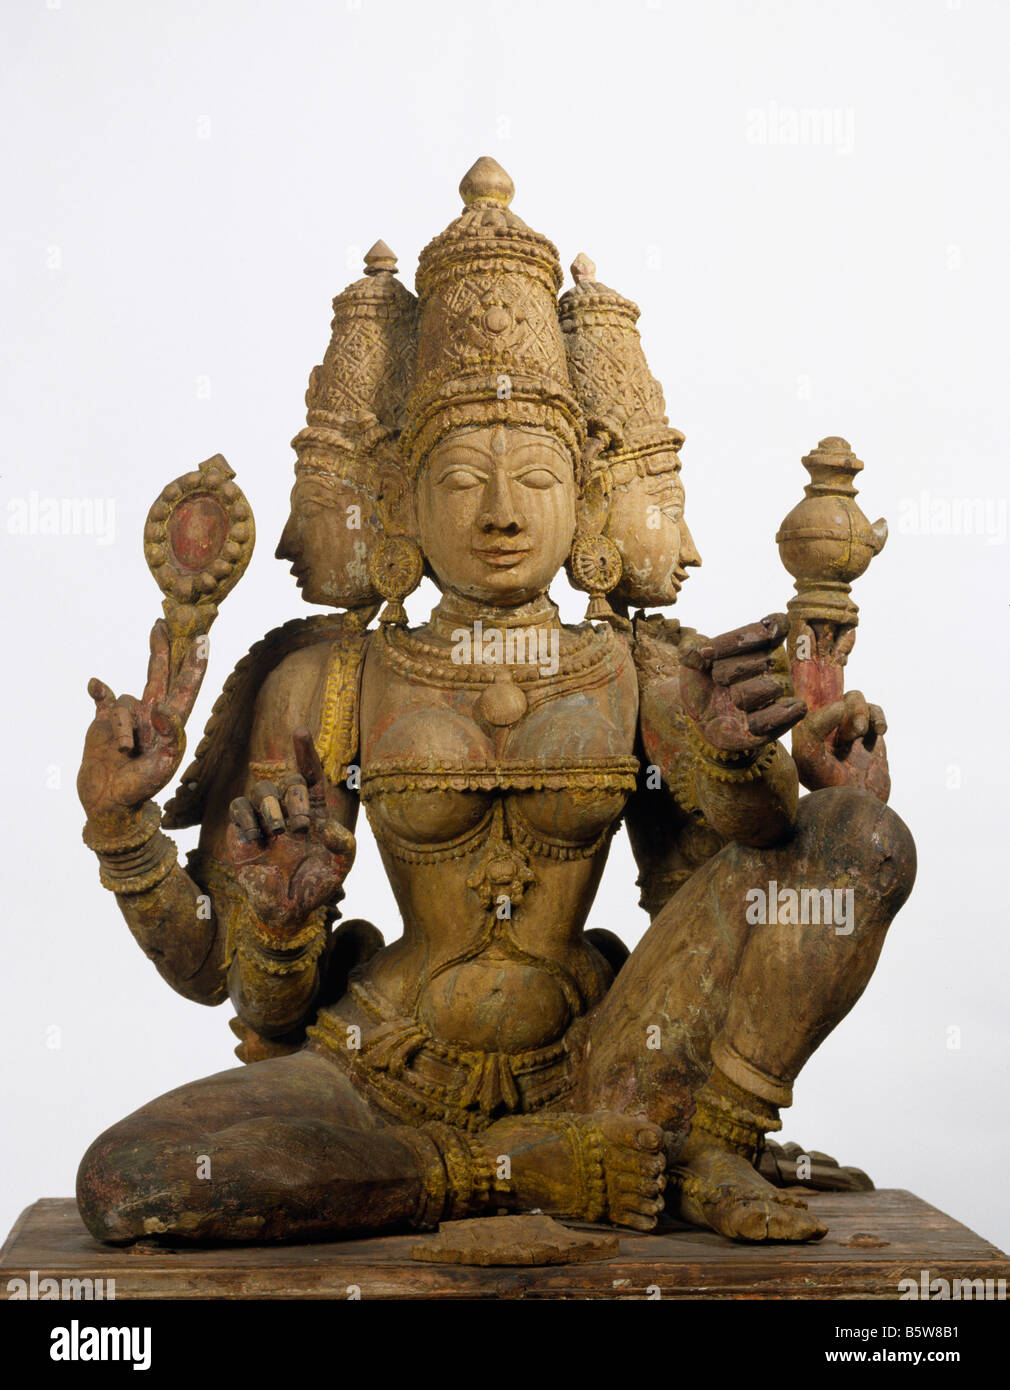 Transporteur Garuda du seigneur Vishnu. Bois et verre Tamilnadu xixe s. Musée national de New Delhi Inde 70,51 150 x 110 cm Banque D'Images